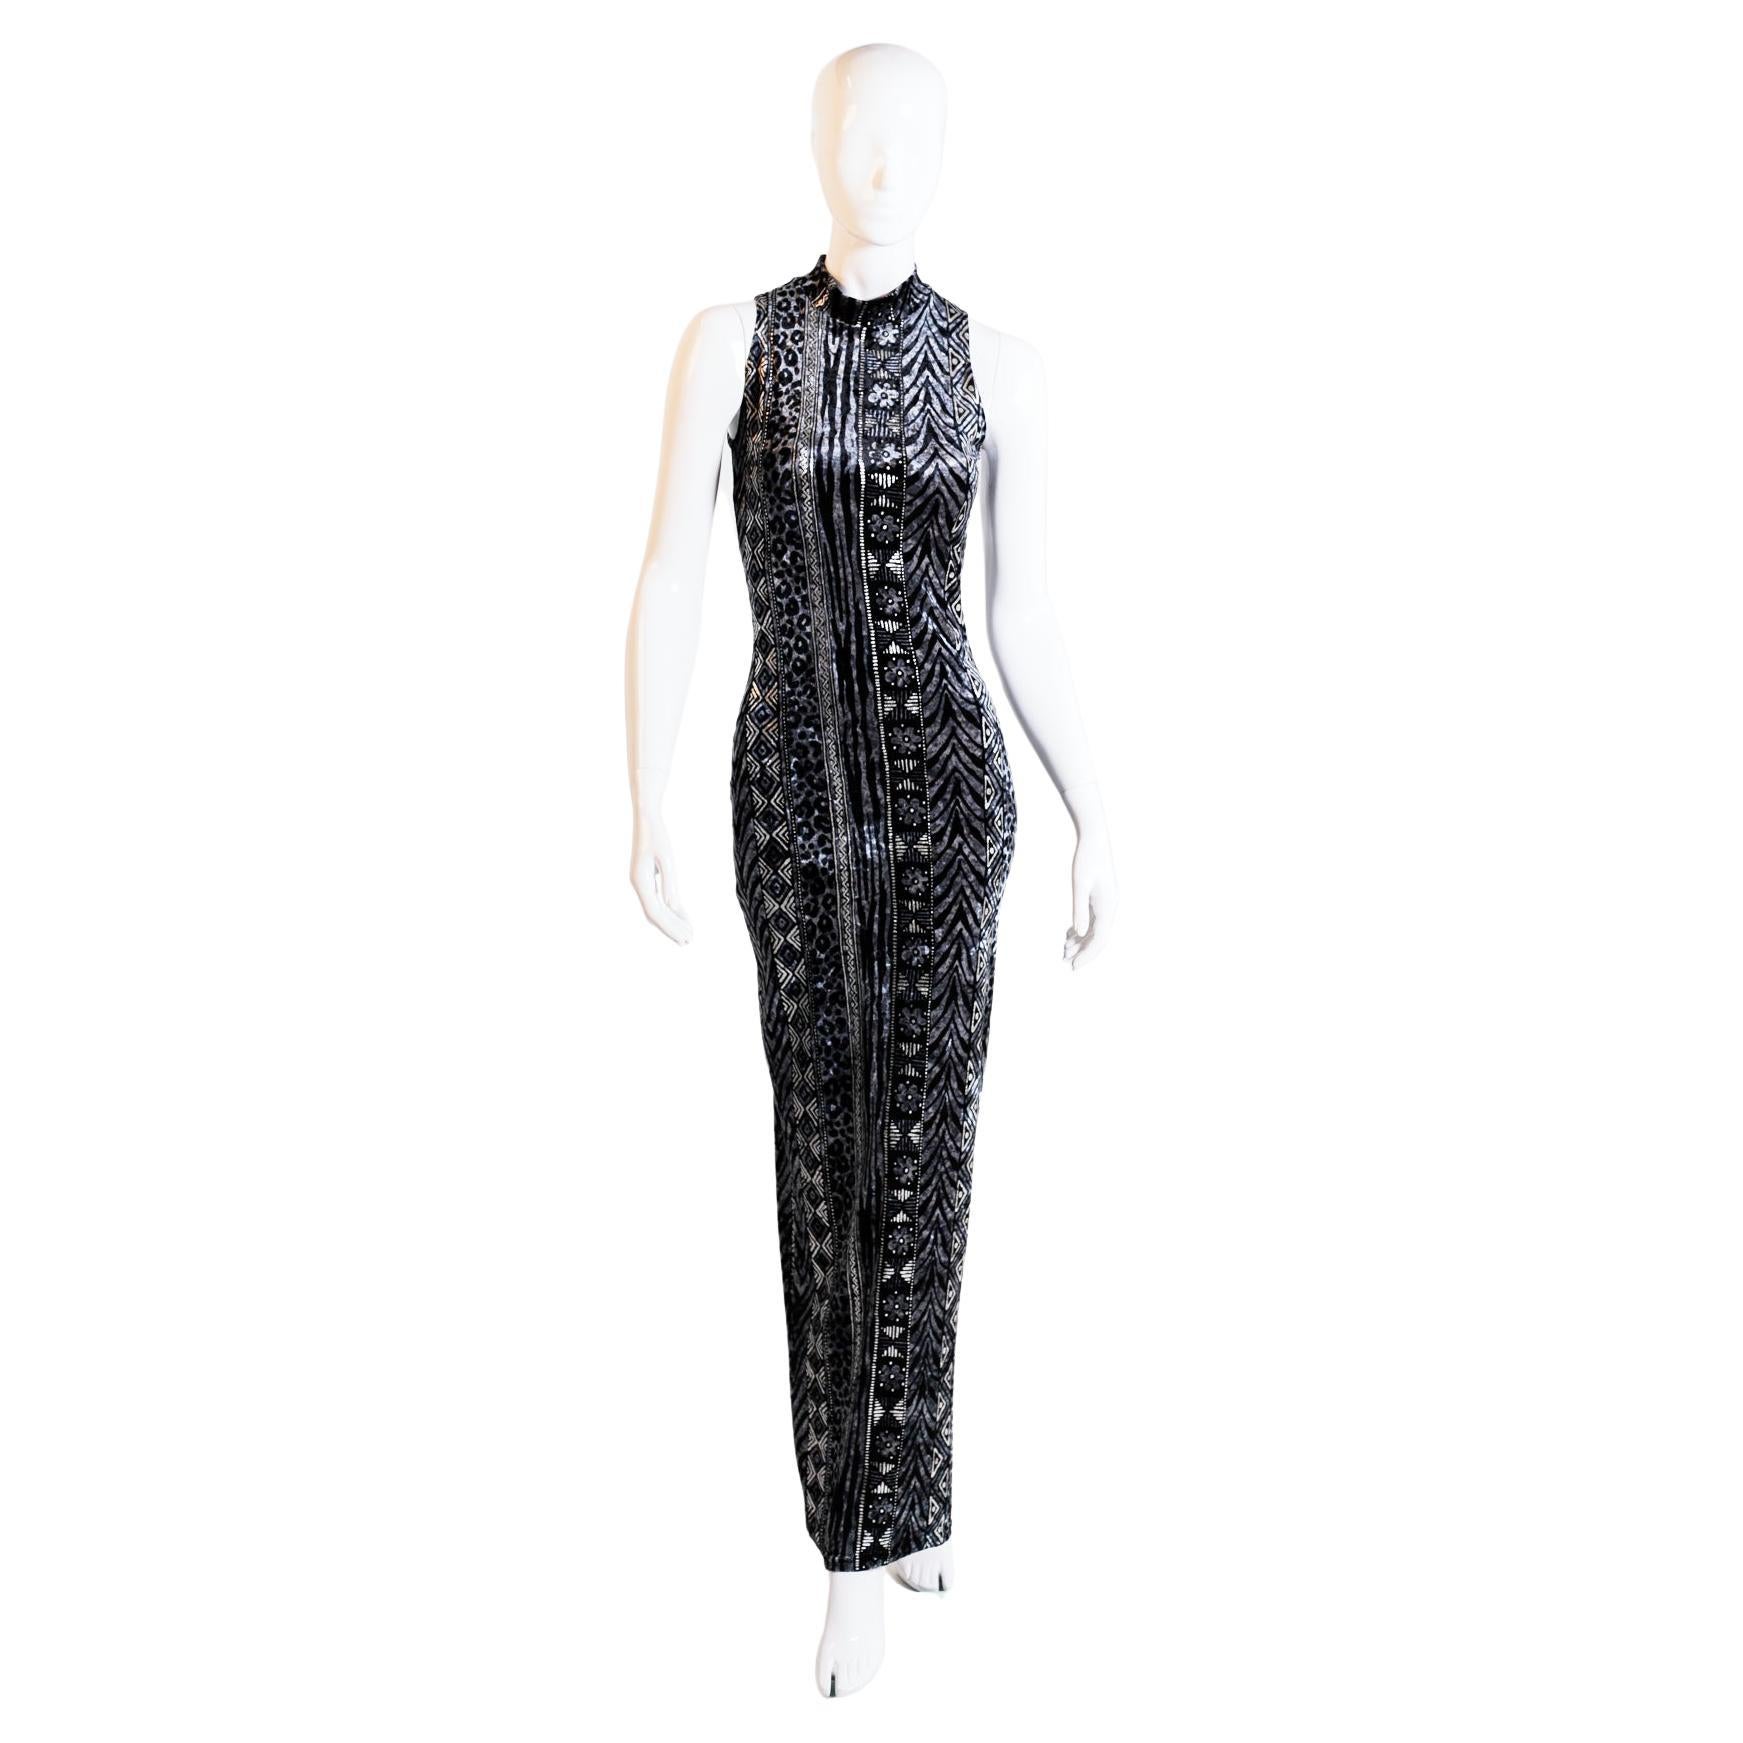 Faust Glittery Black Elegant Dress For Sale